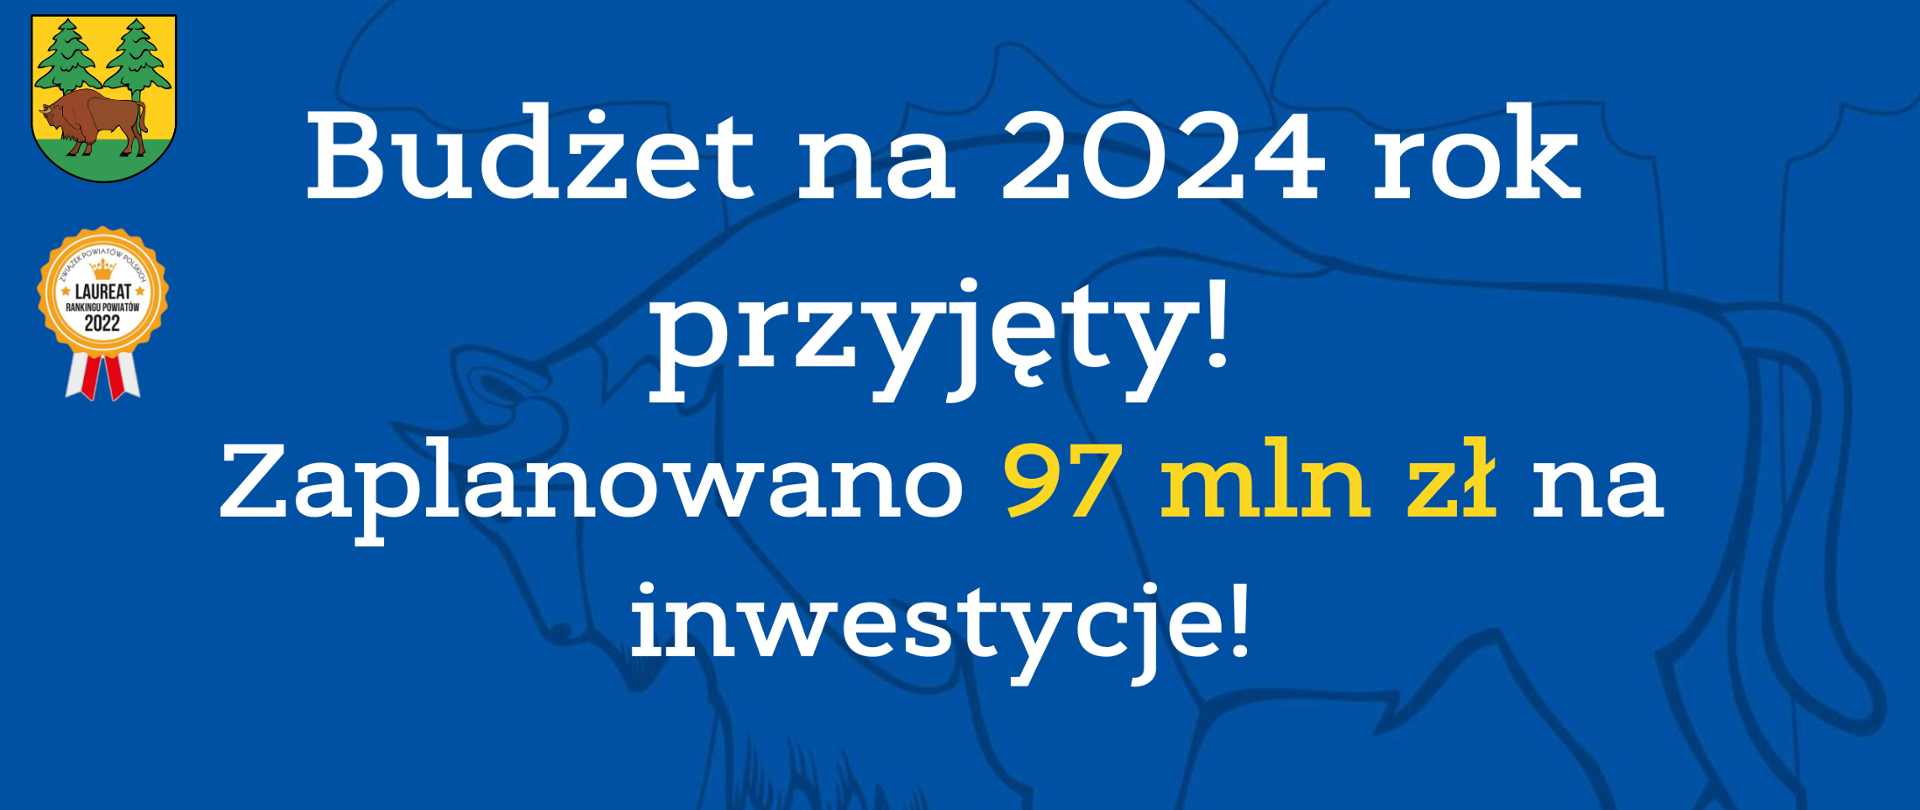 Budżet na 2024 rok przyjęty!
Zaplanowano 97 mln zł na inwestycje!